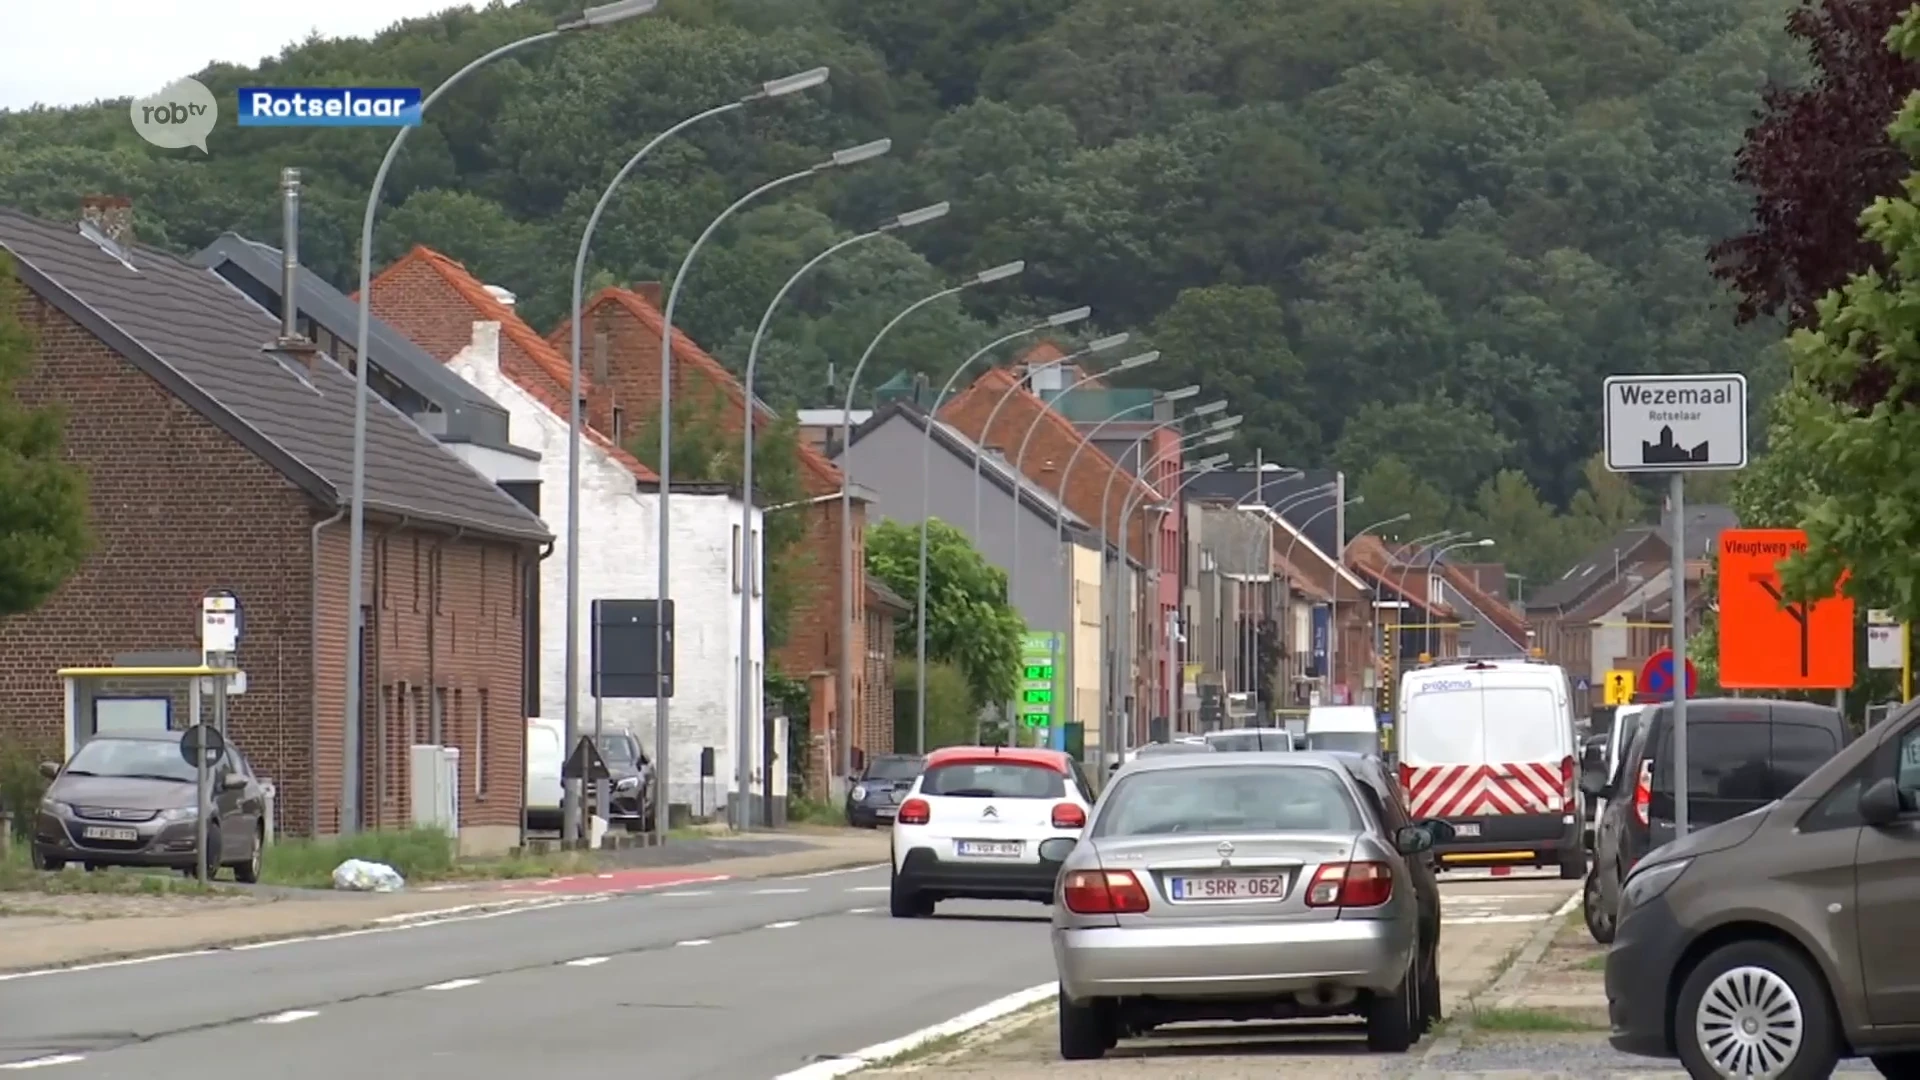 Inwoners beslissen mee over nieuw mobiliteitsplan in Rotselaar